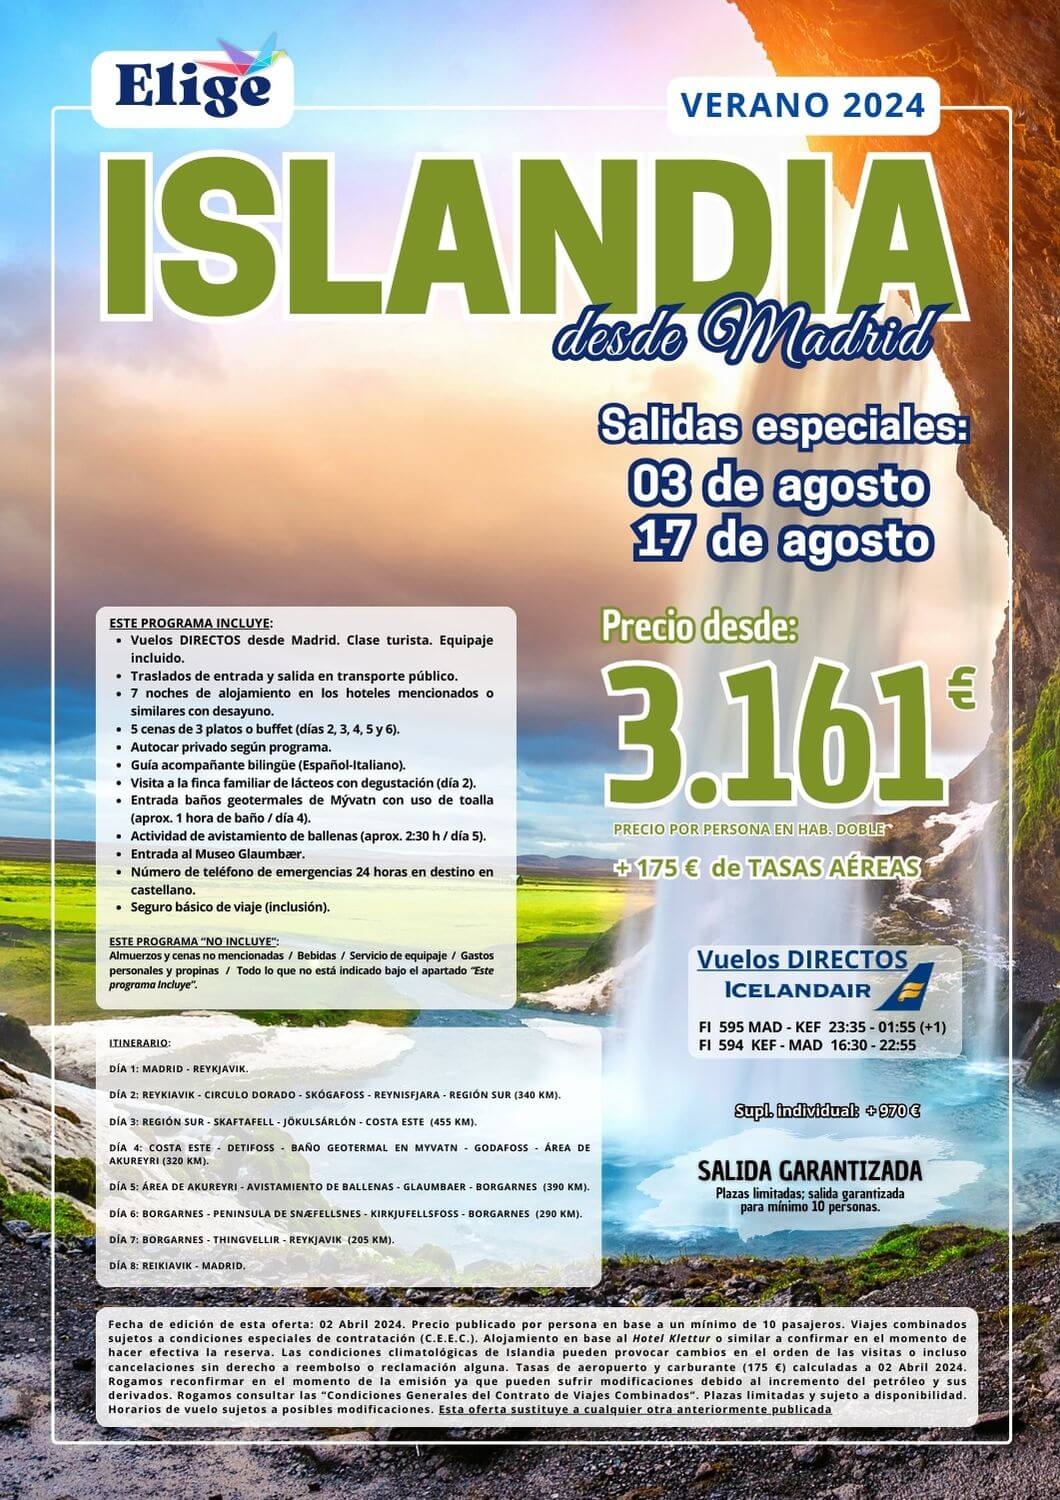 Circuito ISLANDIA verano 2024, salidas especiales desde Madrid, 8 días / 7 noches, vuelos directos, traslados, guía acompañante bilingüe, visitas y actividades para Agencias de Viajes, con Elige tu Viaje.